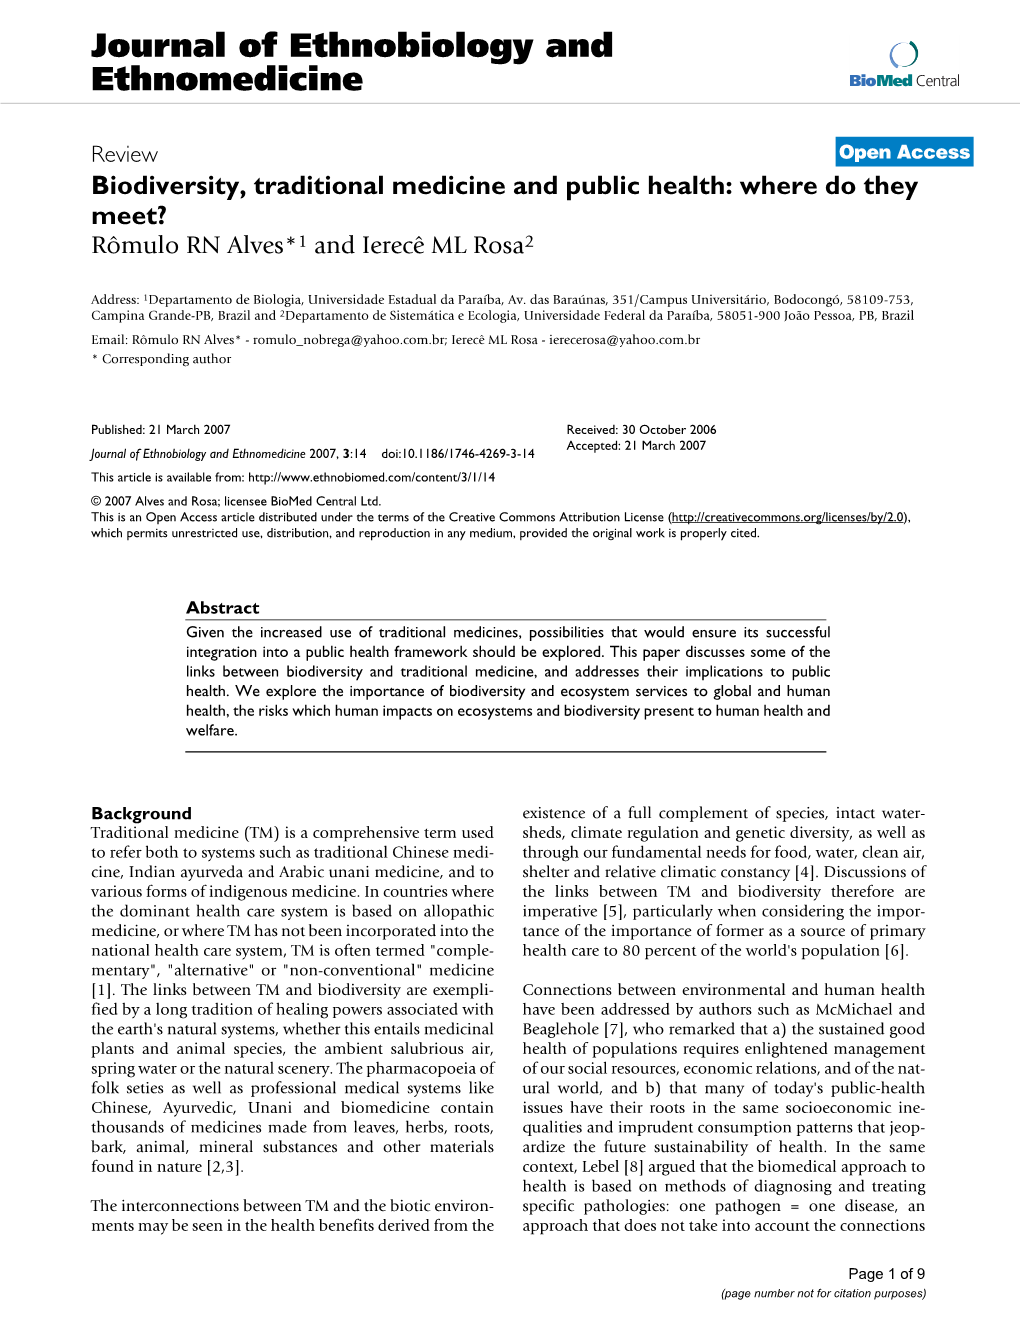 Journal of Ethnobiology and Ethnomedicine Biomed Central